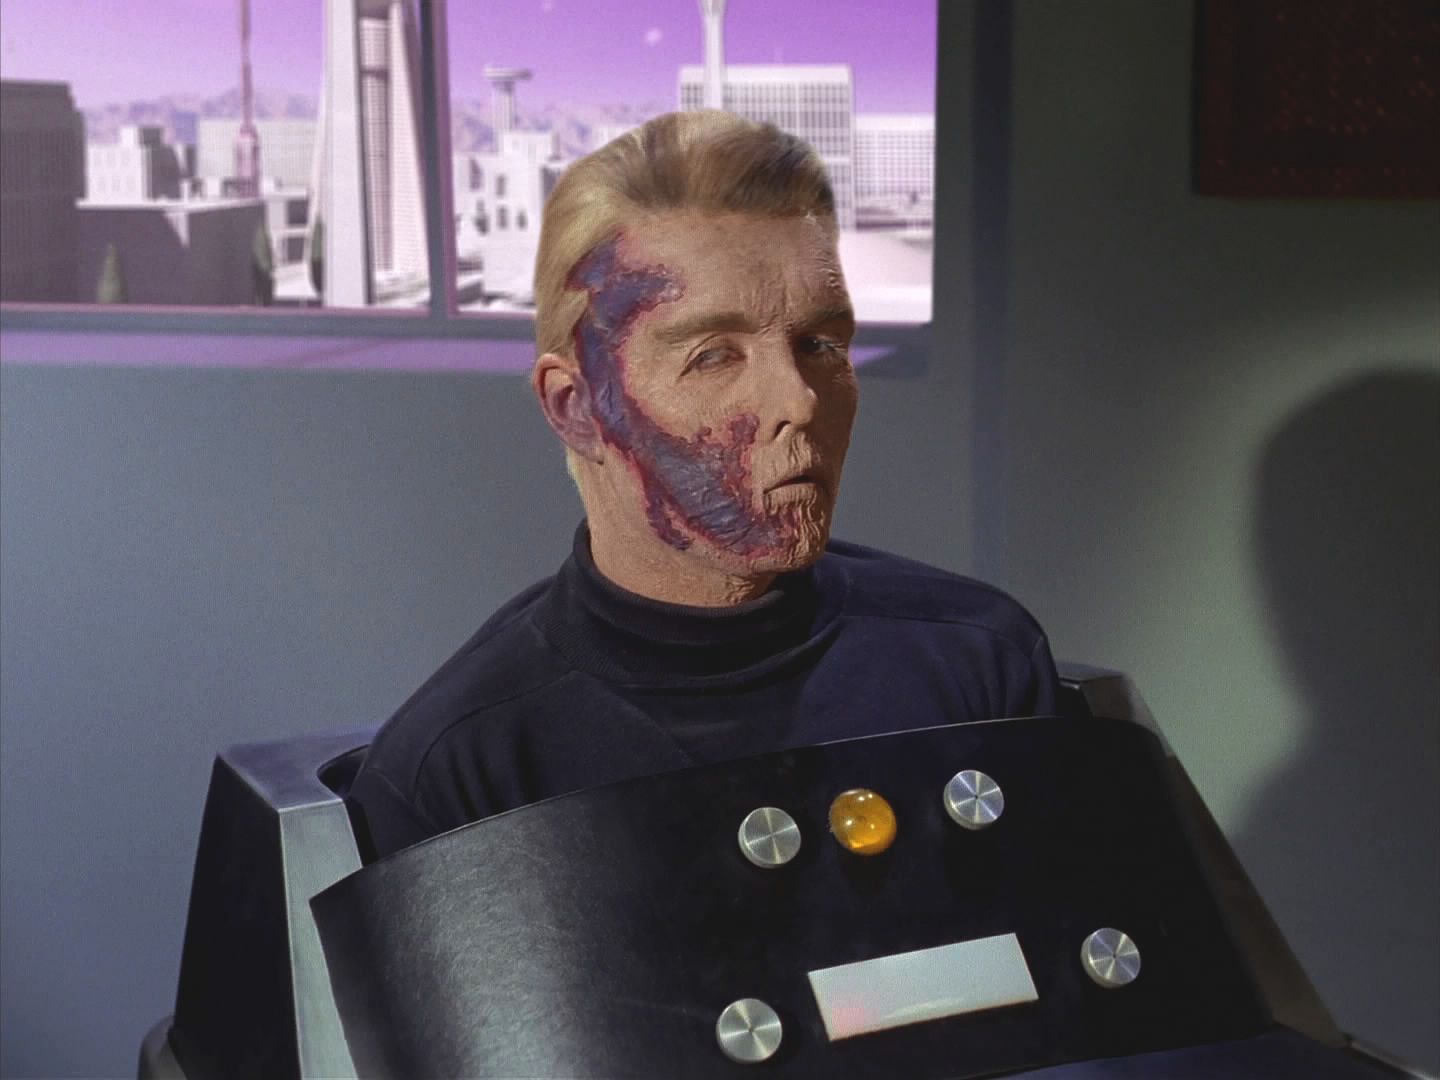 Komodor se domníval, že přiletěli navštívit zcela ochrnutého kapitána Pikea, který je zde hospitalizován. Ale Kirk o tom ani nevěděl. 